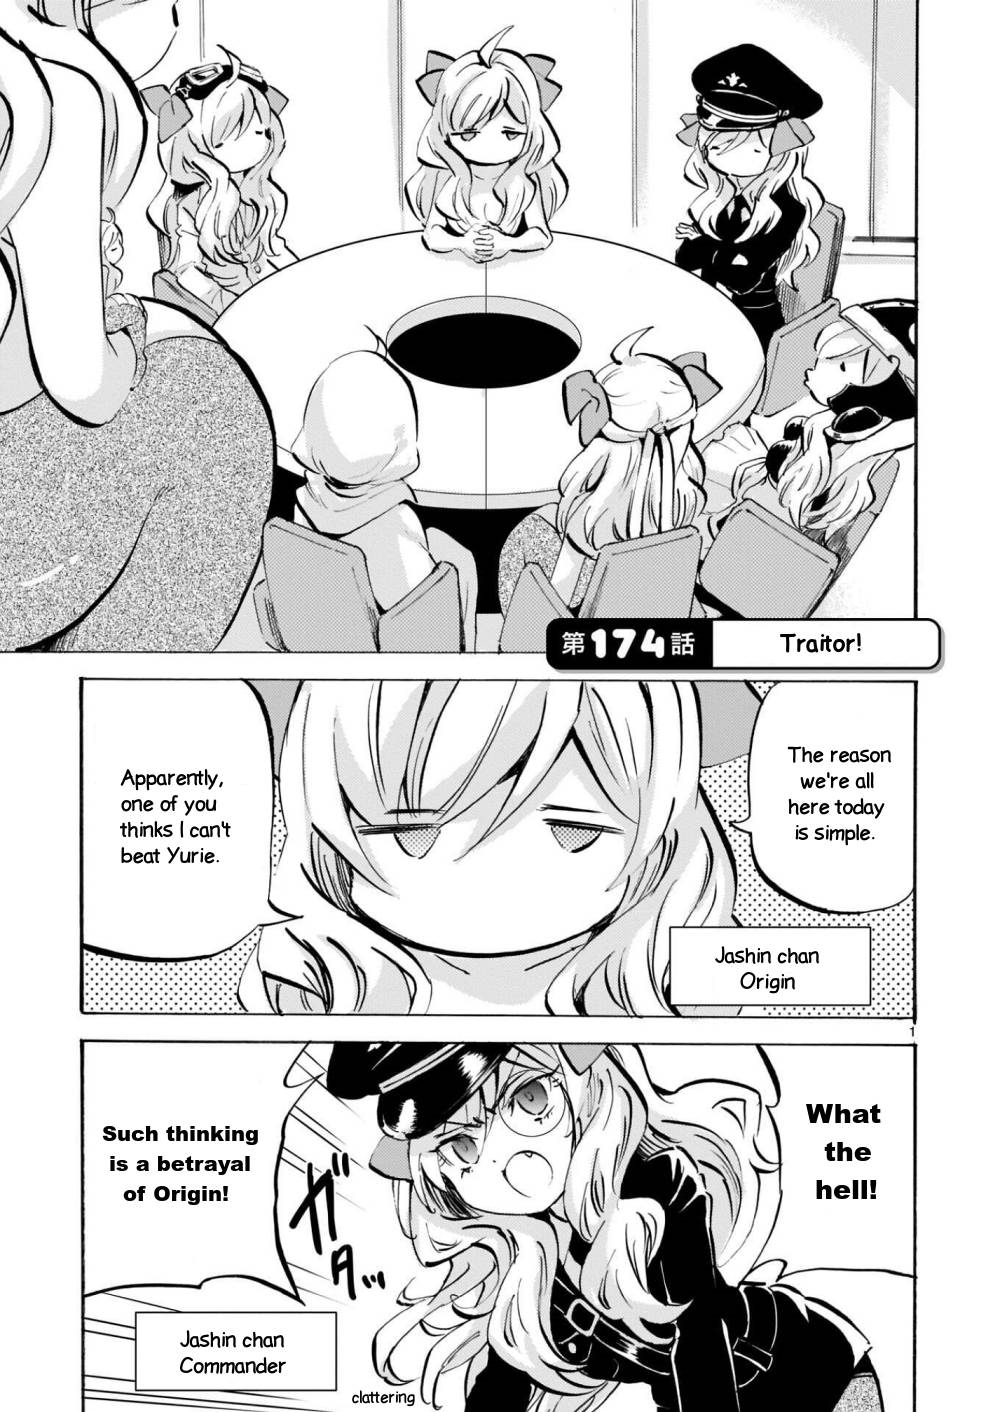 Jashin-chan Dropkick chapter 174 page 1